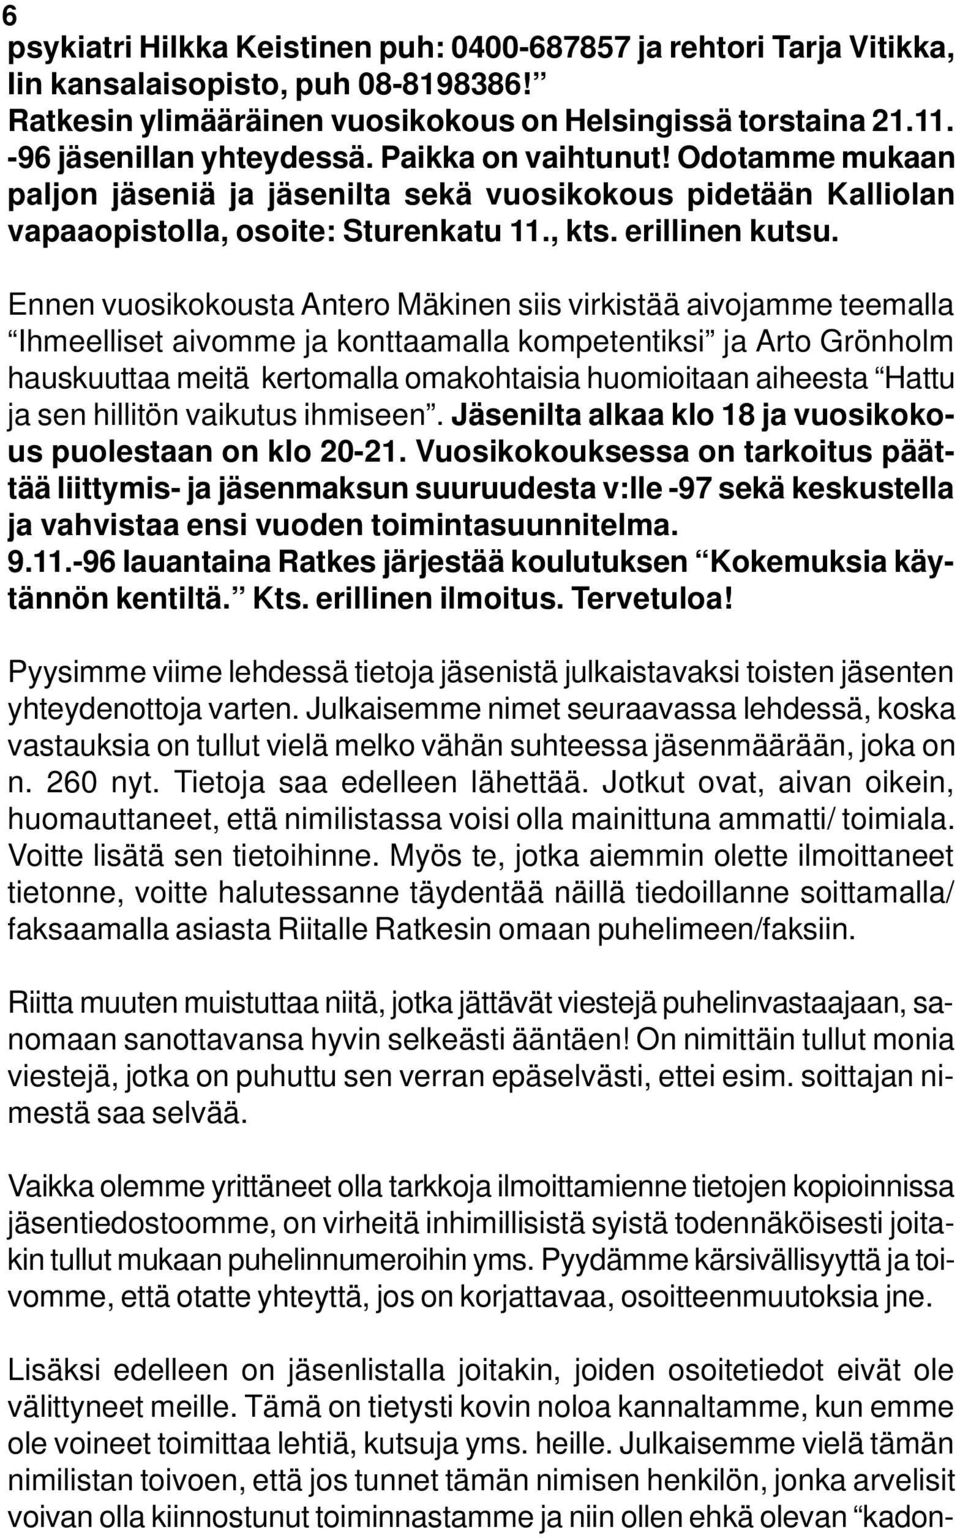 Ennen vuosikokousta Antero Mäkinen siis virkistää aivojamme teemalla Ihmeelliset aivomme ja konttaamalla kompetentiksi ja Arto Grönholm hauskuuttaa meitä kertomalla omakohtaisia huomioitaan aiheesta